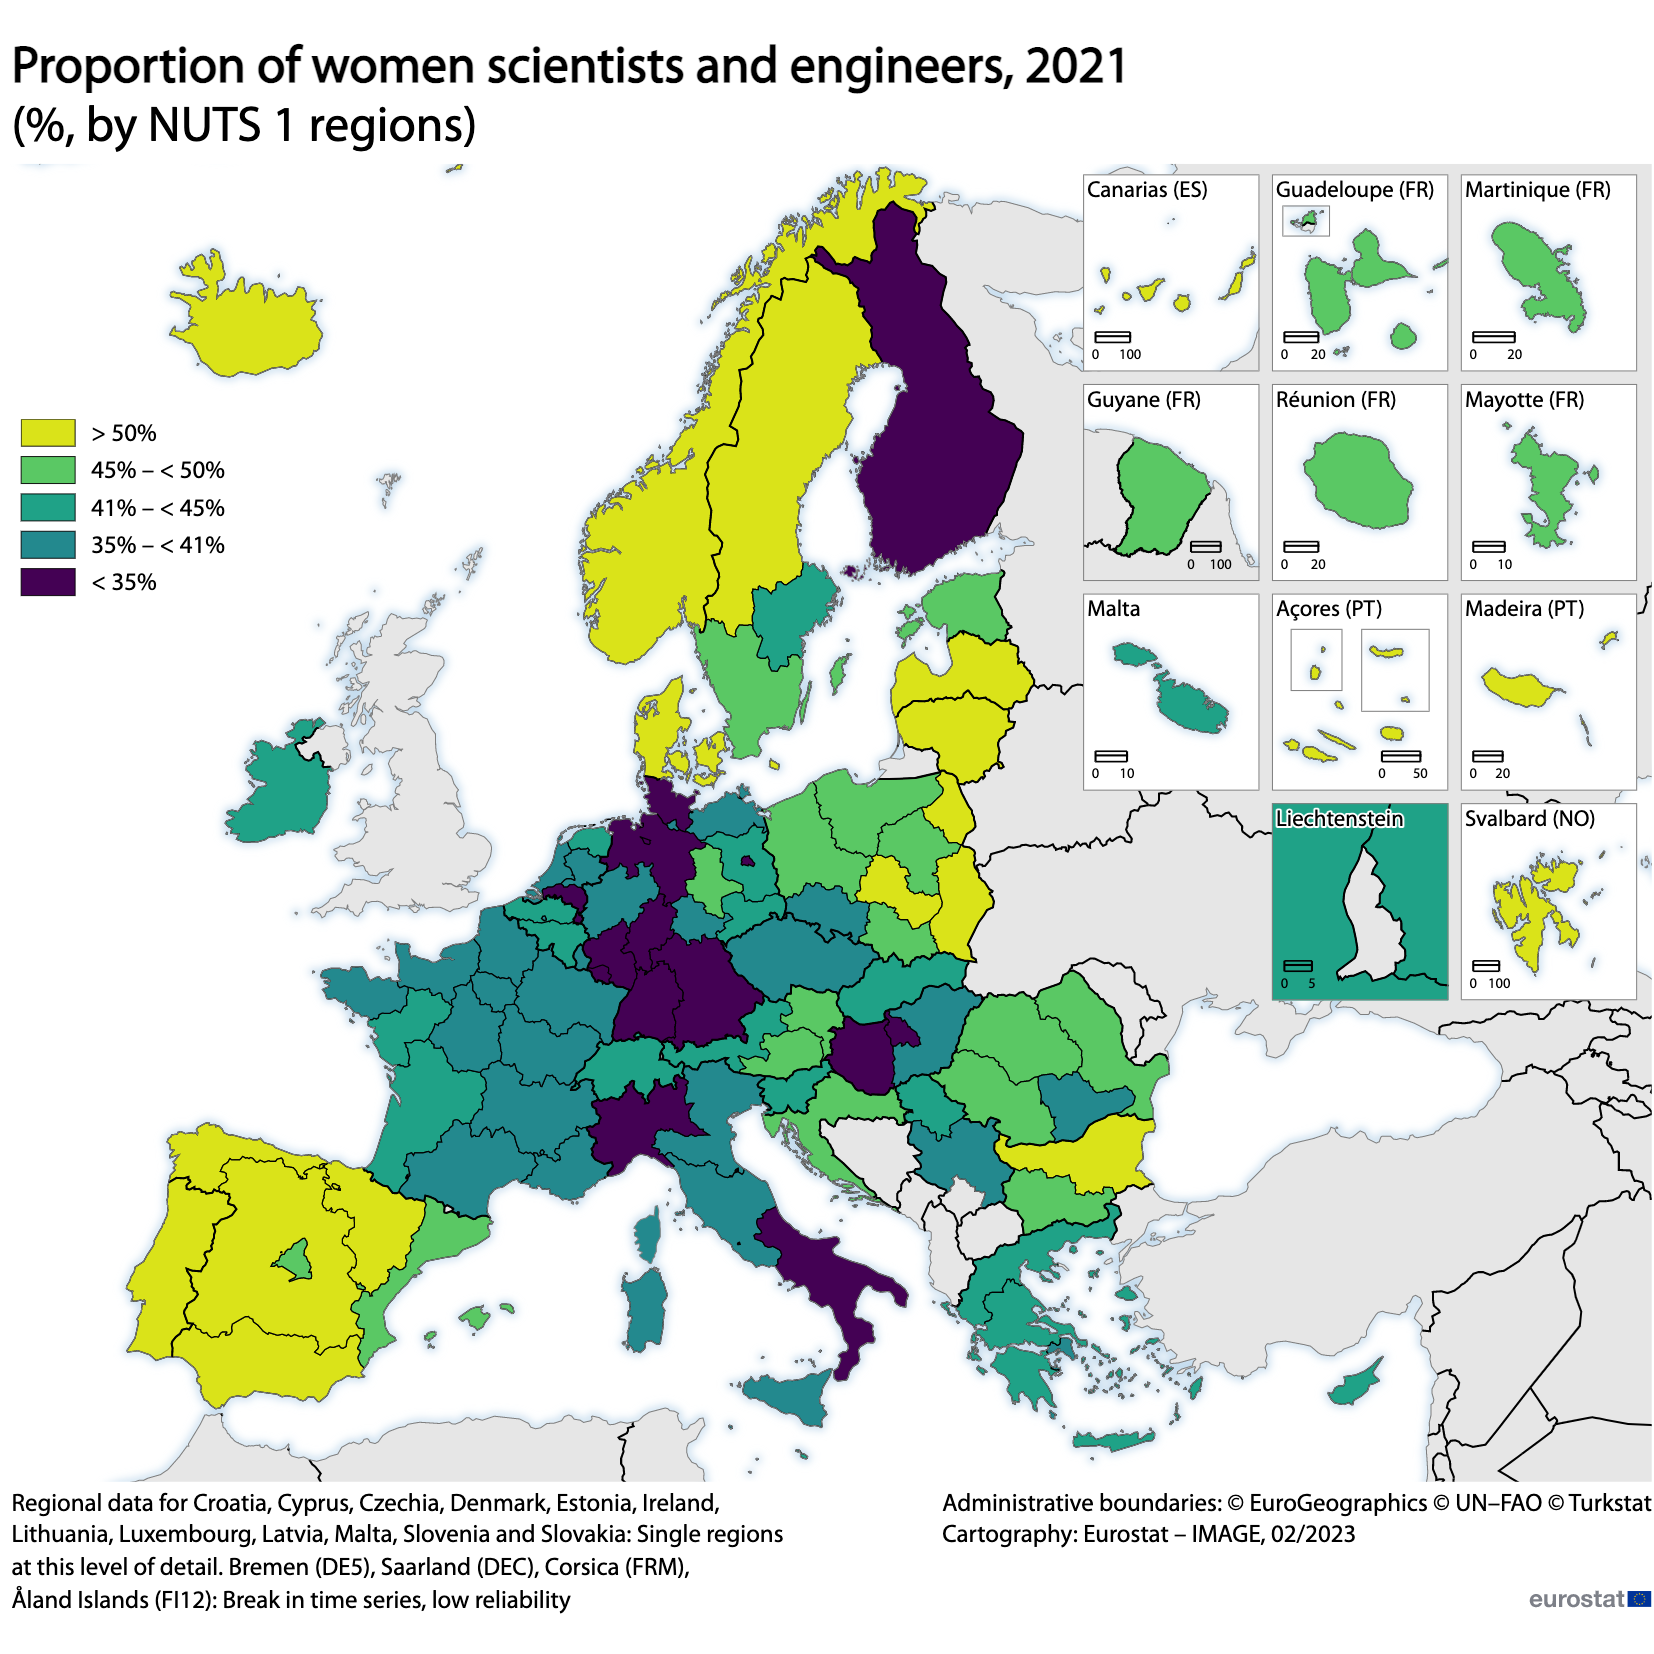 Χάρτης: Αναλογία γυναικών επιστημόνων και μηχανικών, %, ανά περιφέρειες NUTS 1, 2021